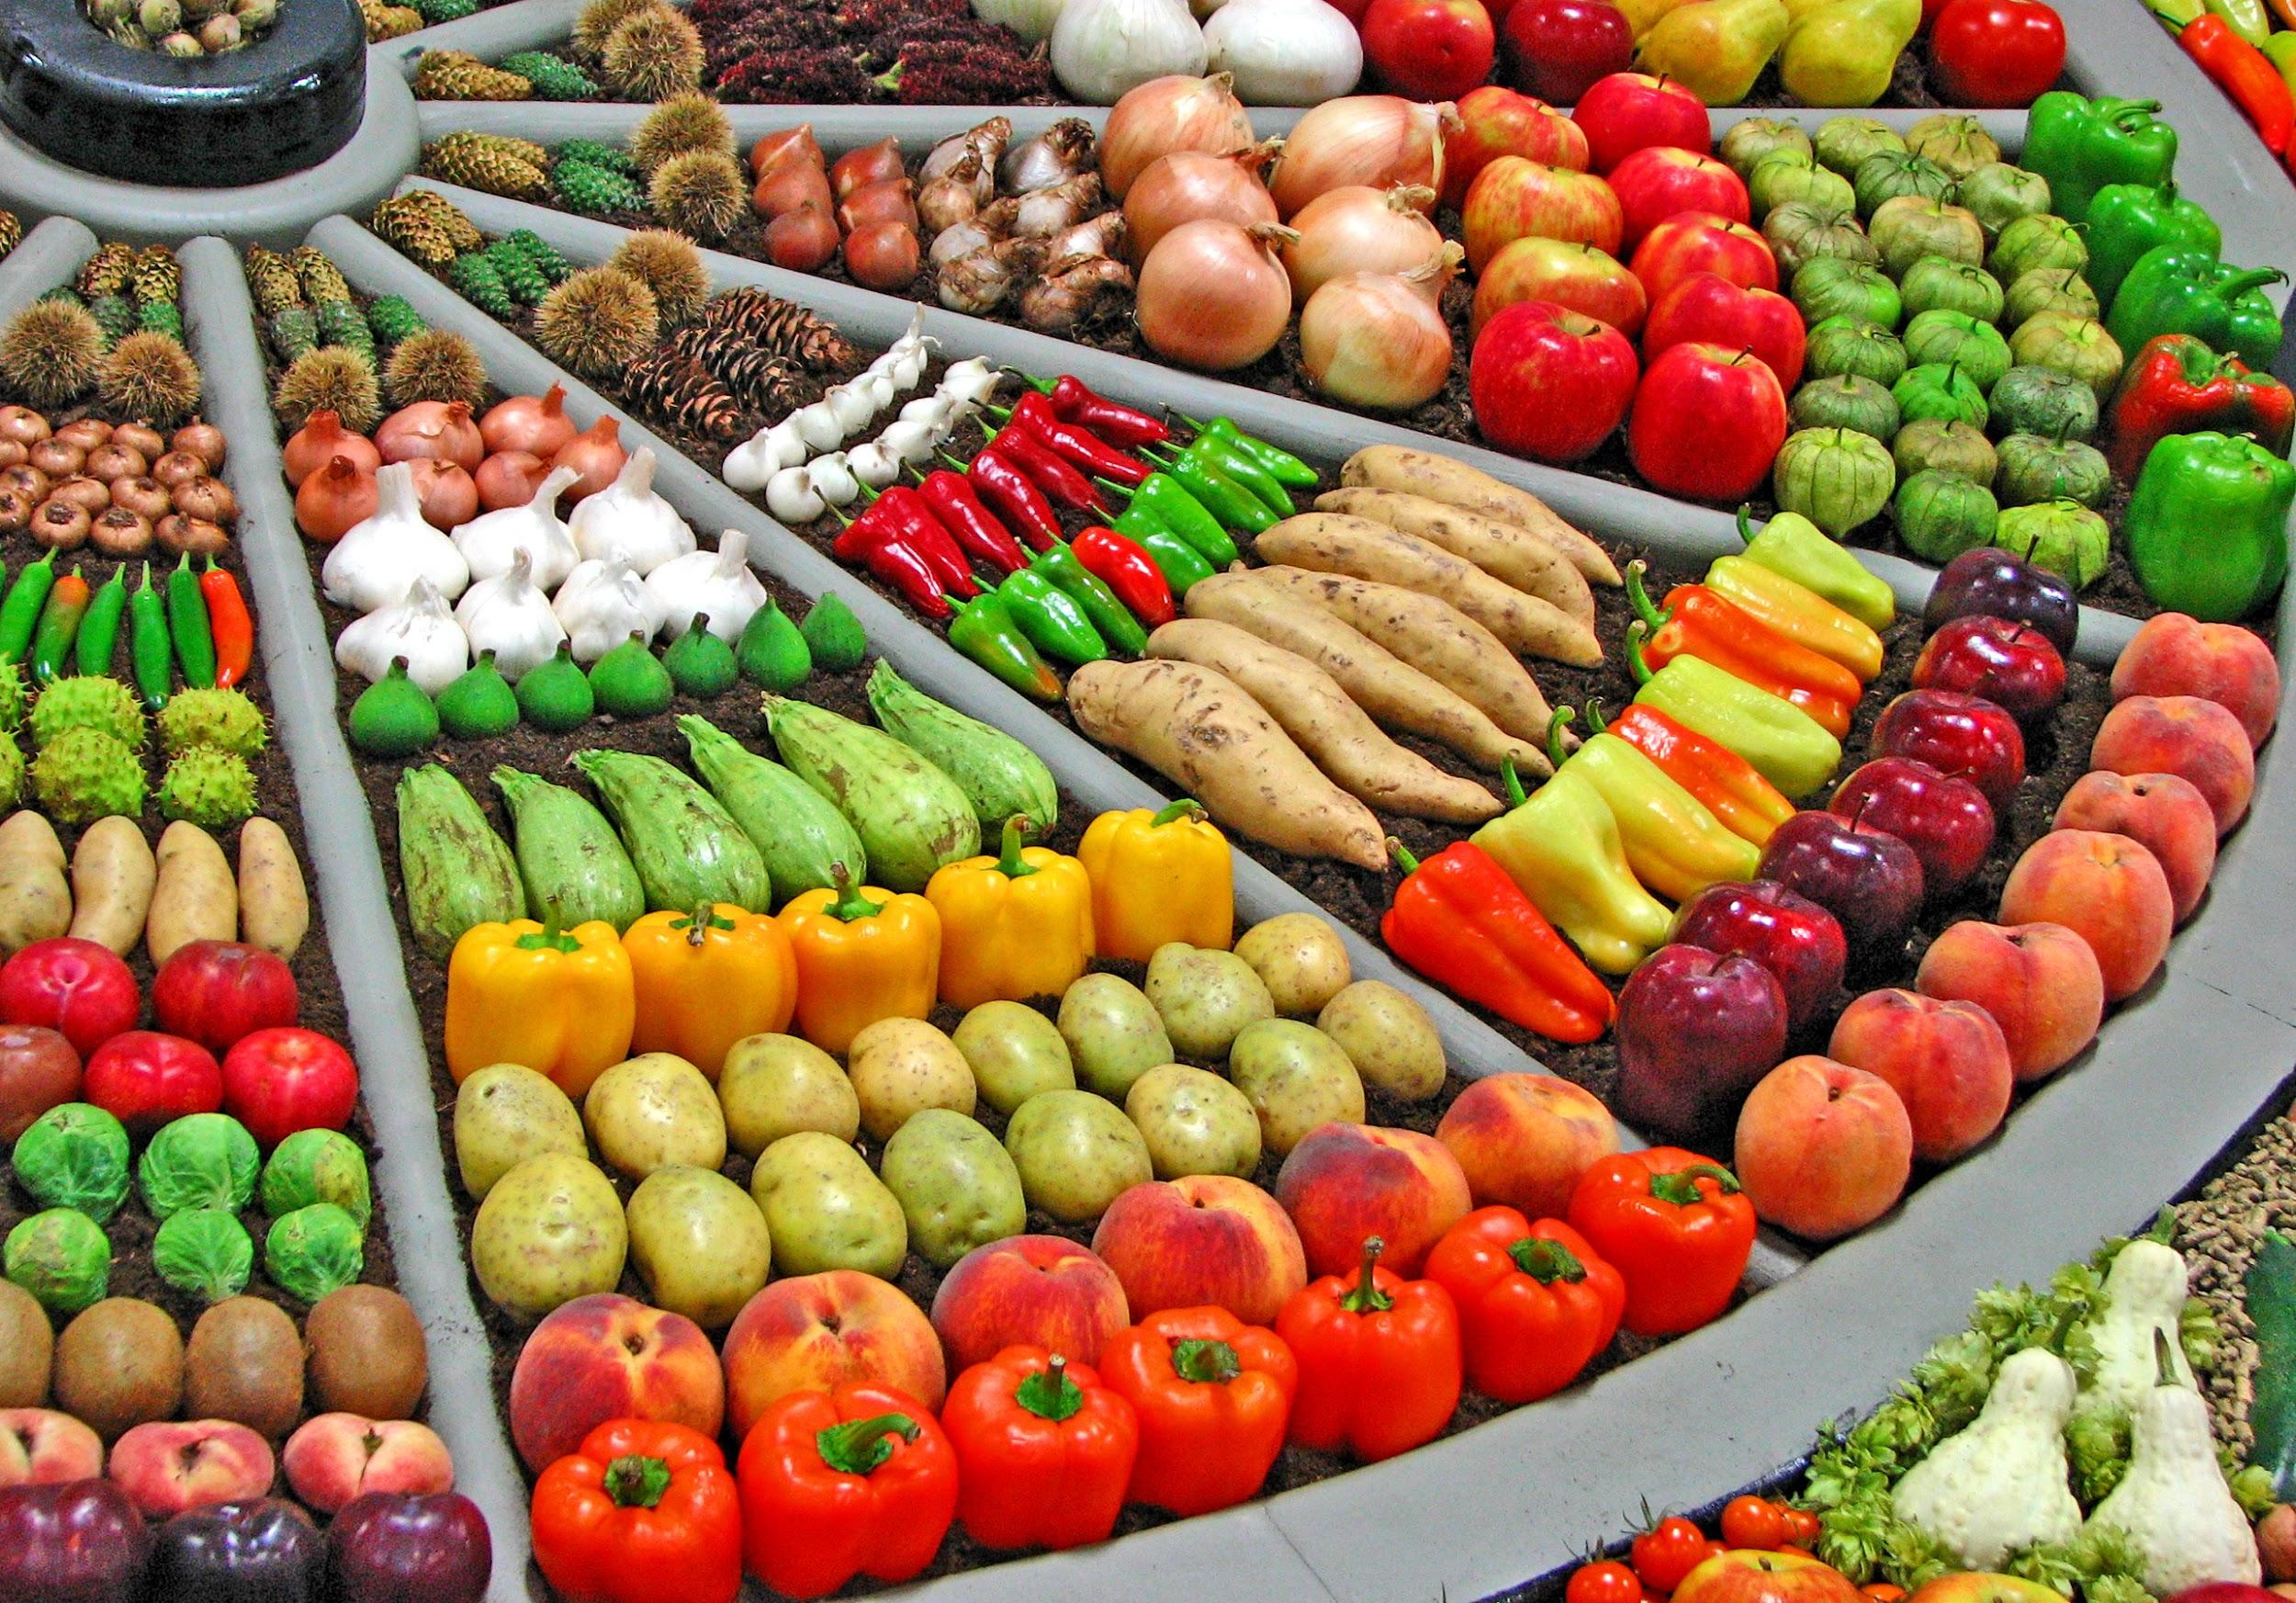 Плодовые товары. Мева-сабзавот кластер. Выкладка овощей и фруктов. Прилавок с овощами и фруктами. Красивая выкладка овощей и фруктов.